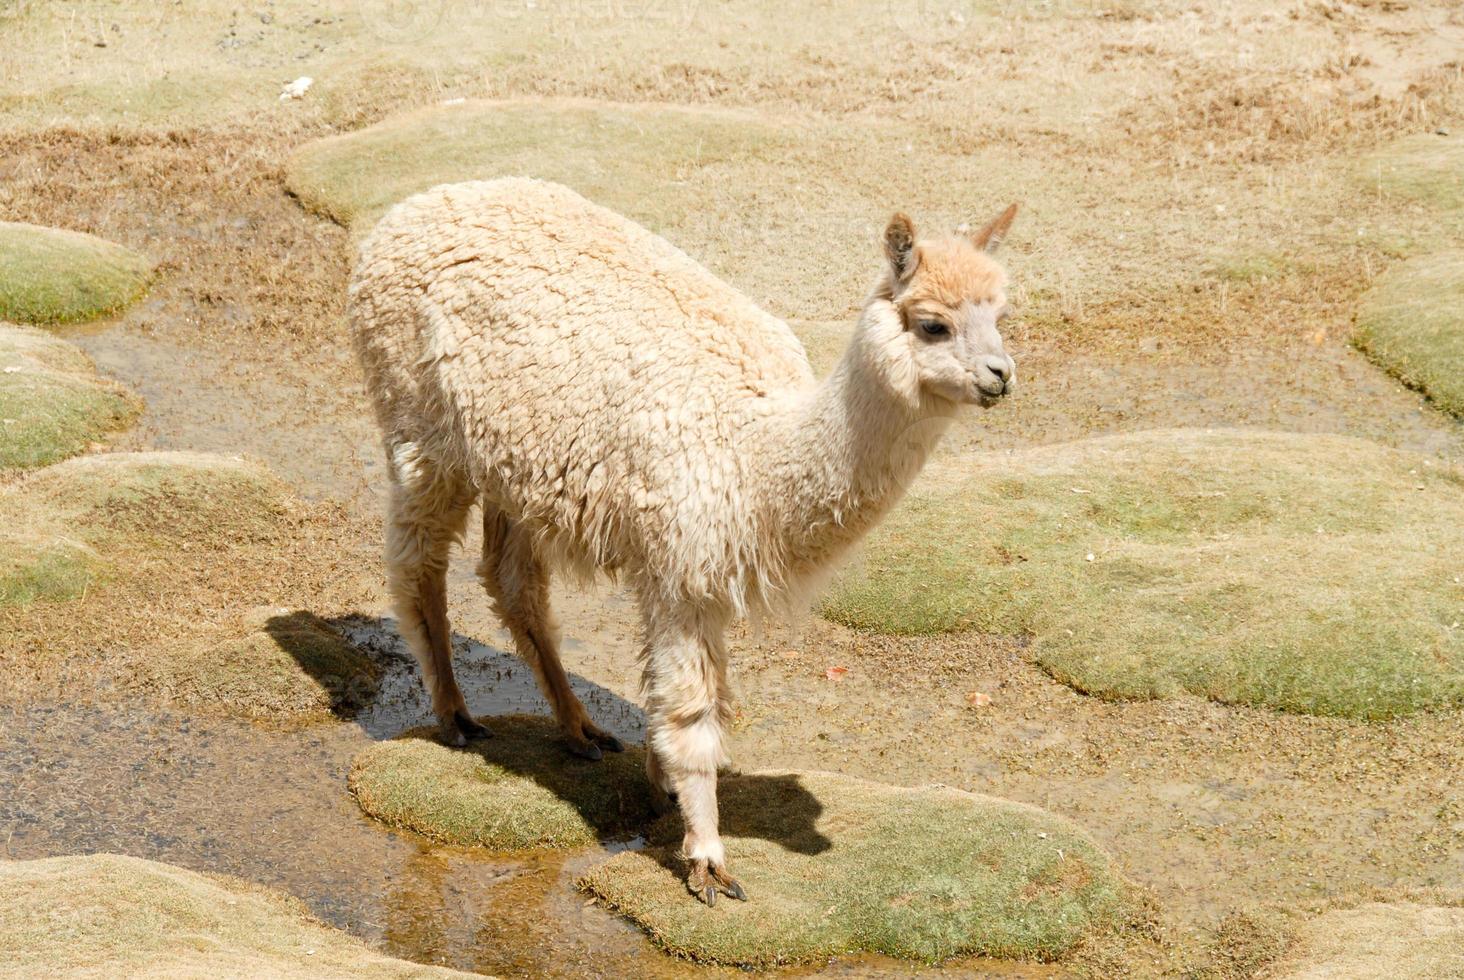 Llama in a mountain landscape, Peru photo